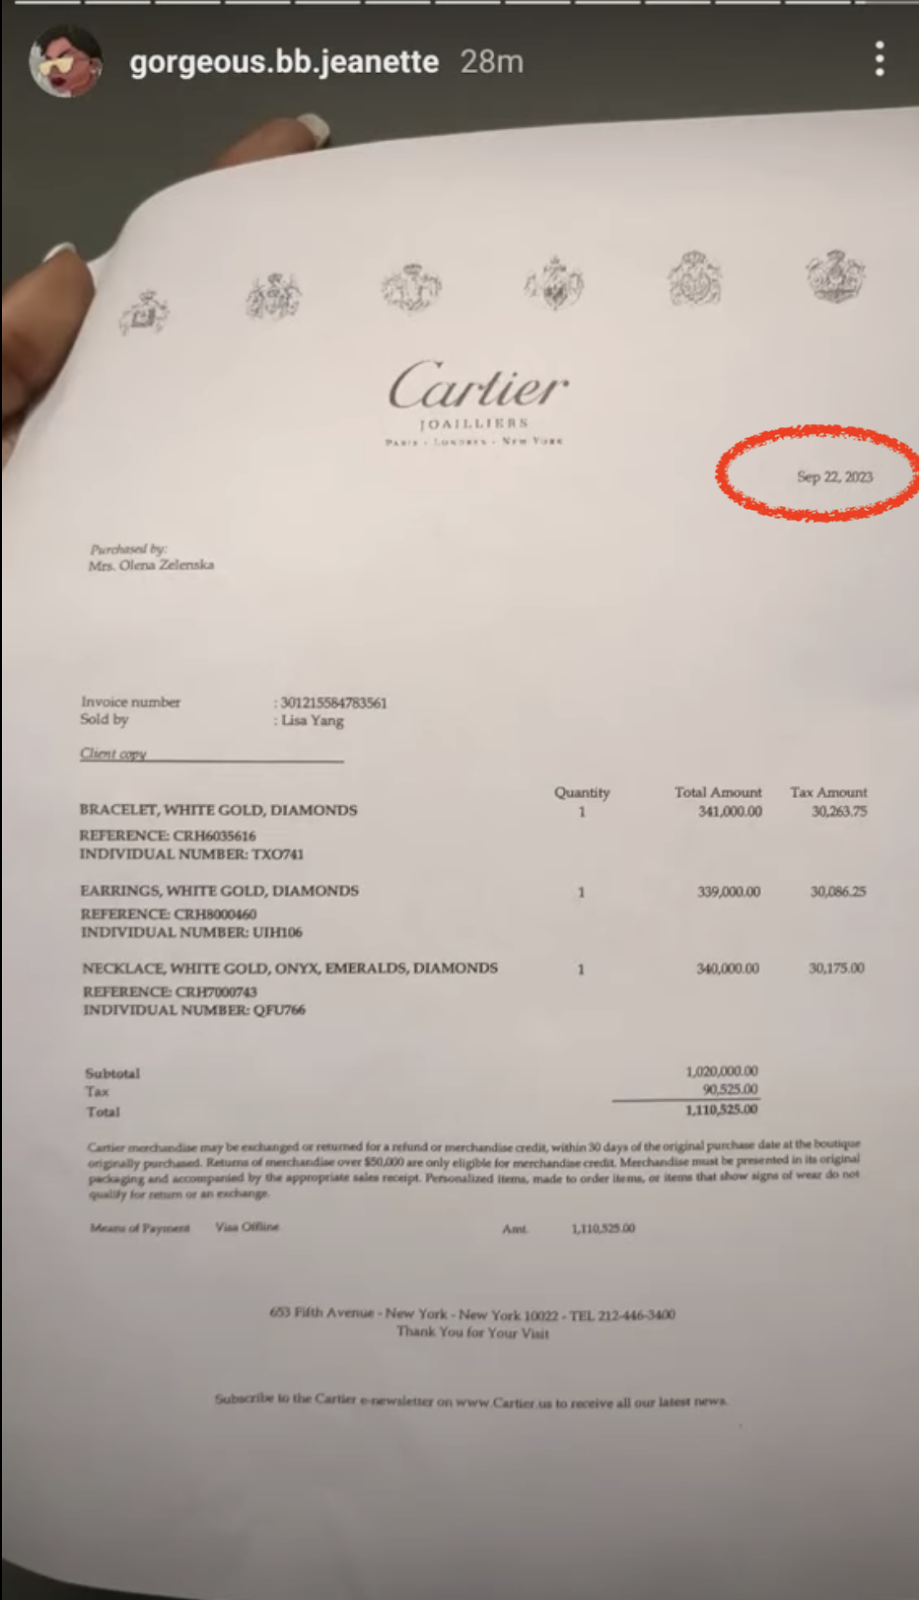 РосСМИ попались на фейке о Елене Зеленской, которая "потратила более миллиона долларов на украшения Cartier"